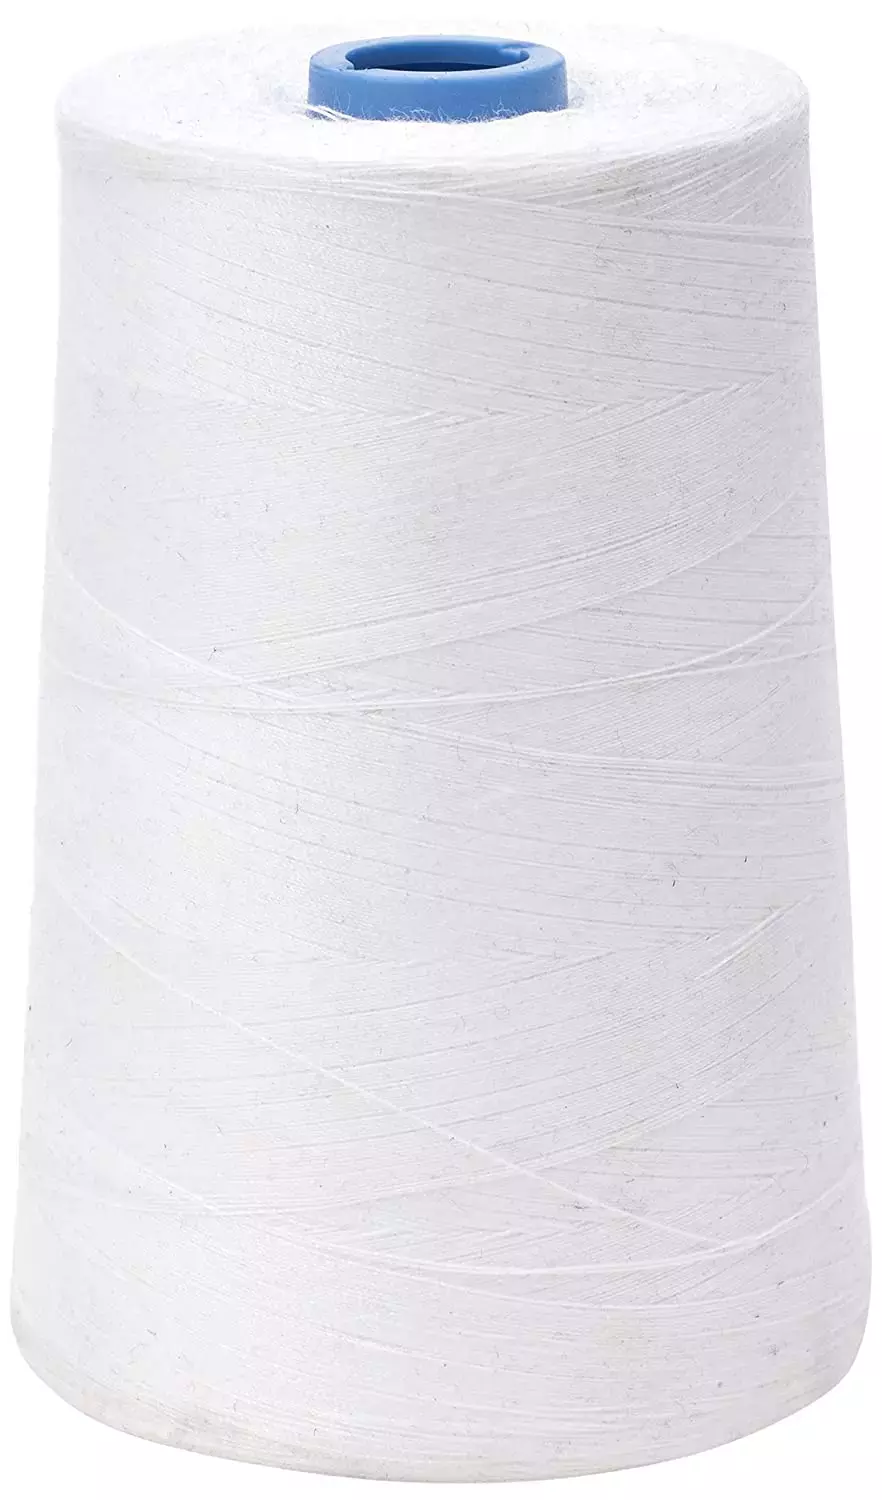 Gütermann Cotton 12wt Thread 200m - Natural 1010